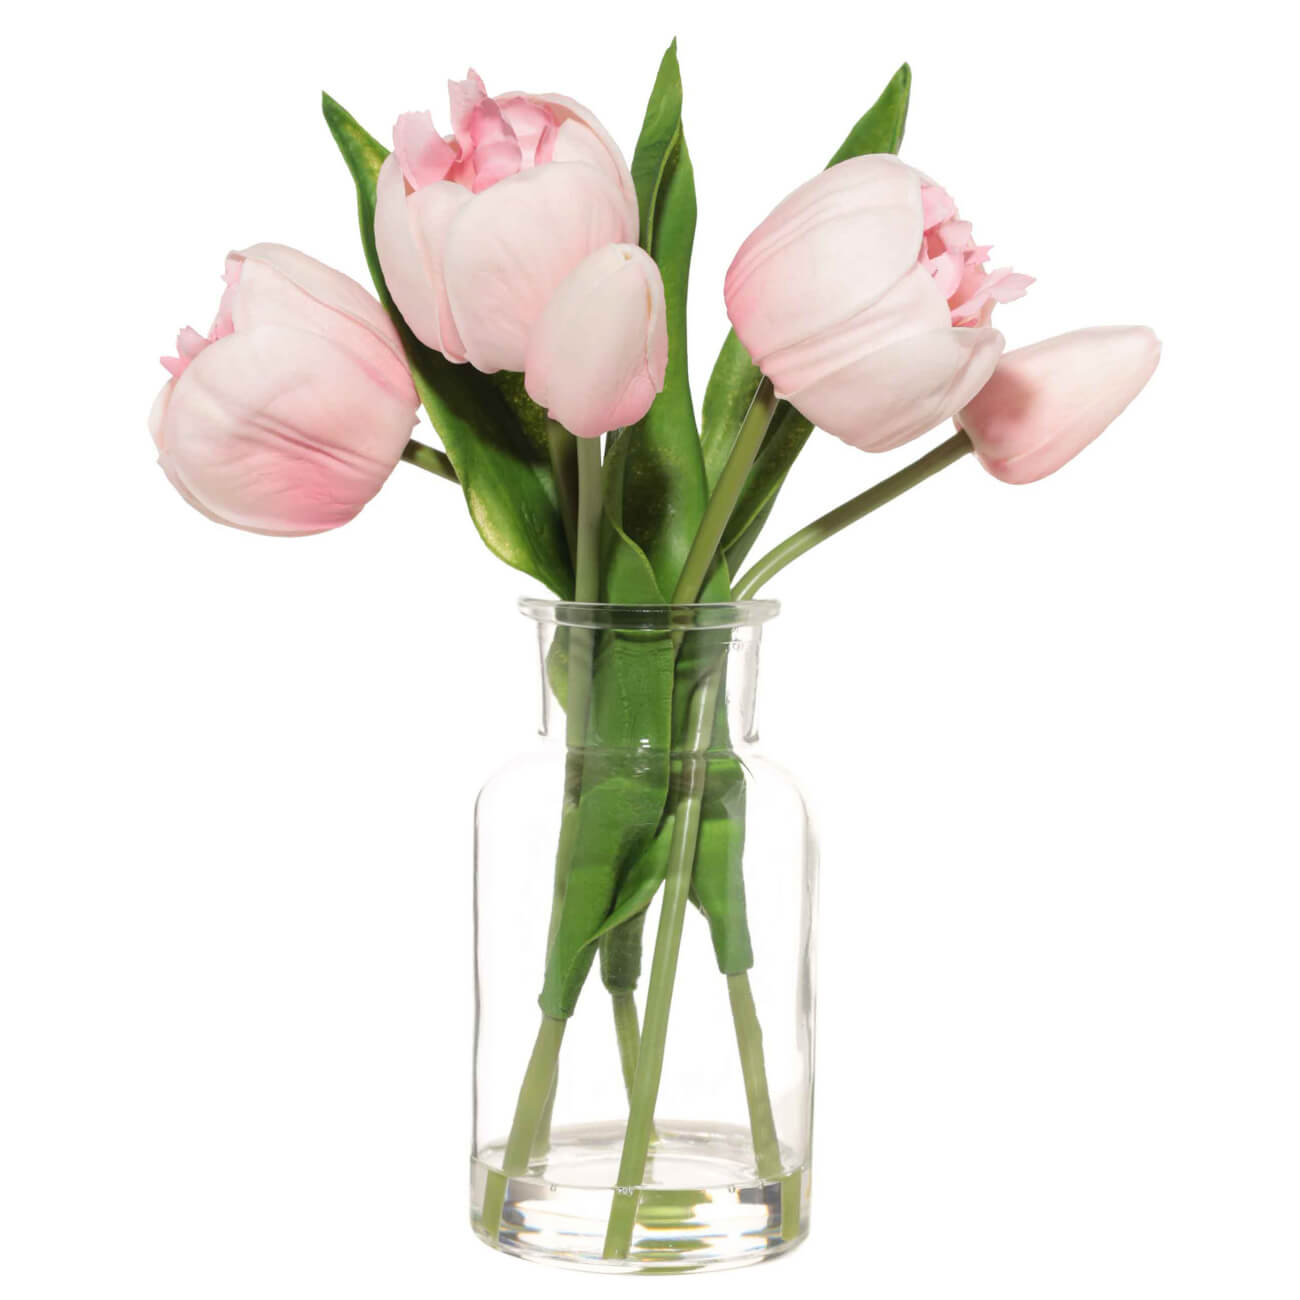 Букет искусственный, 21 см, в вазе, полиуретан/стекло, Розовые тюльпаны, Tulip garden изображение № 1